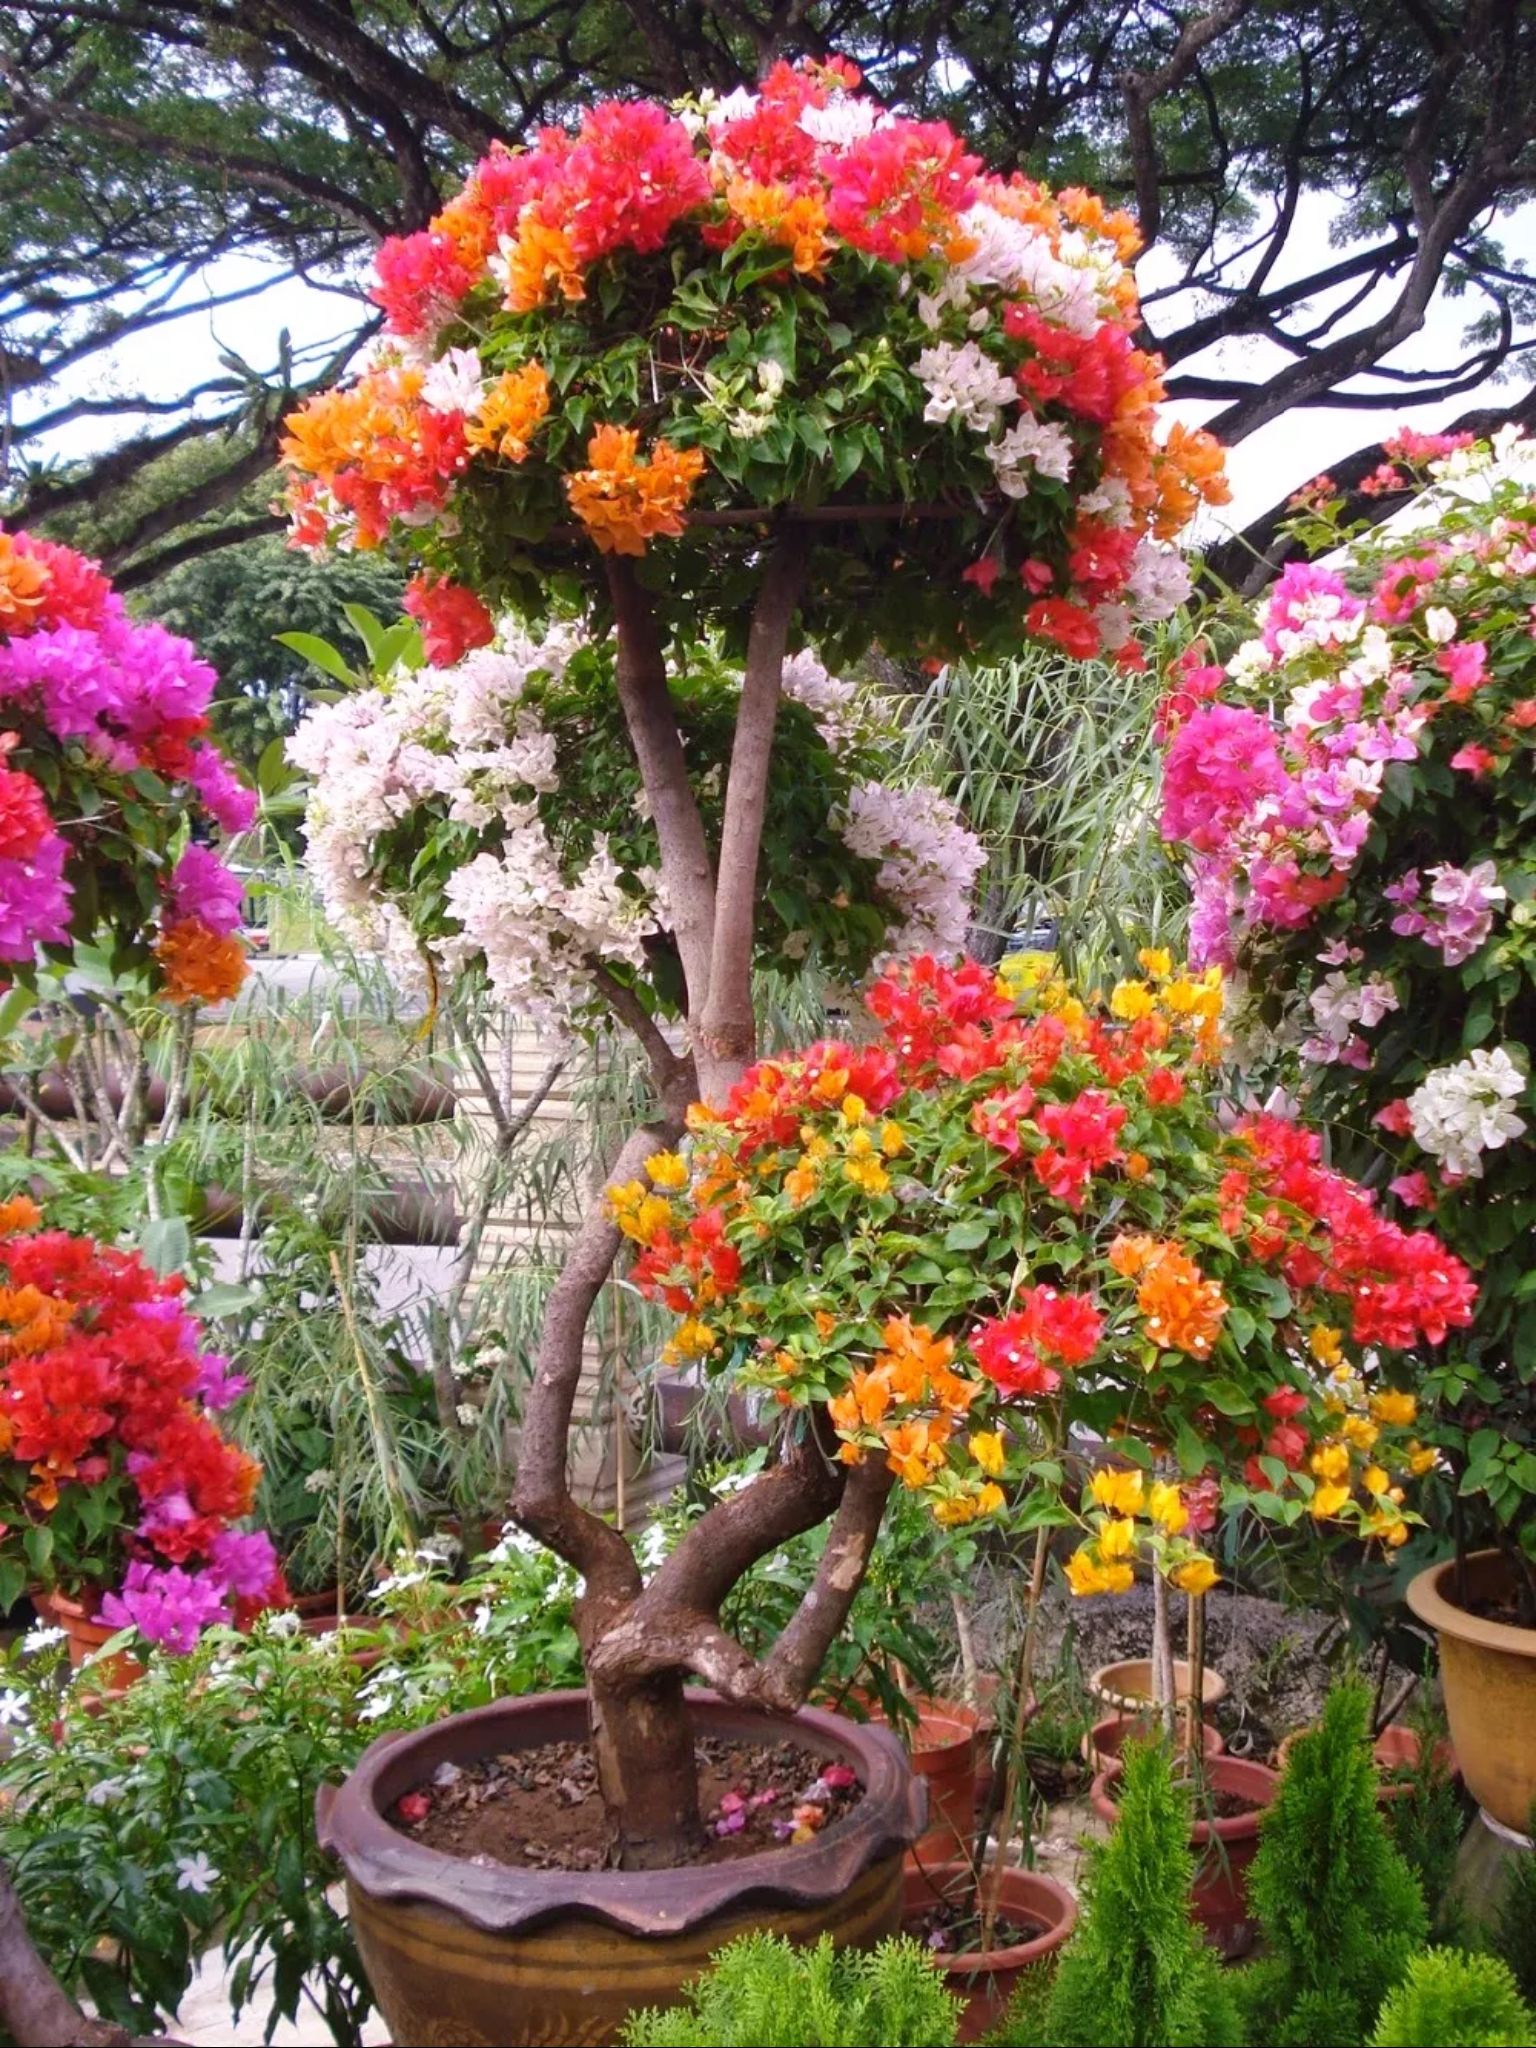 Flowers galore | NATURE'S SPLENDOR | Pinterest | Flowers ...